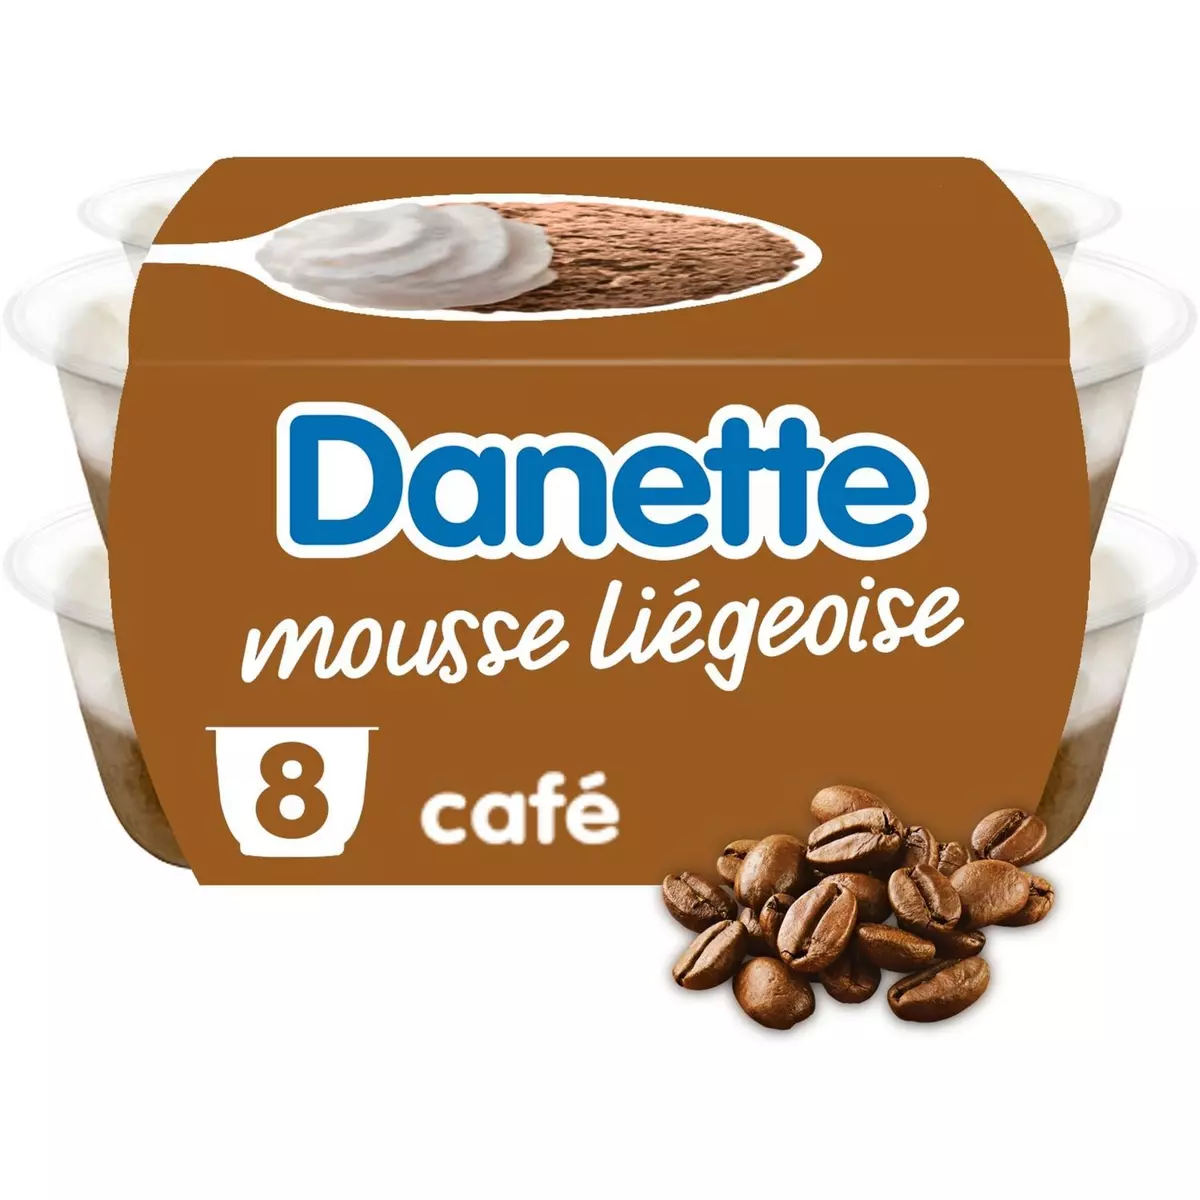 DANETTE Mousse liégeoise au café 8x80g